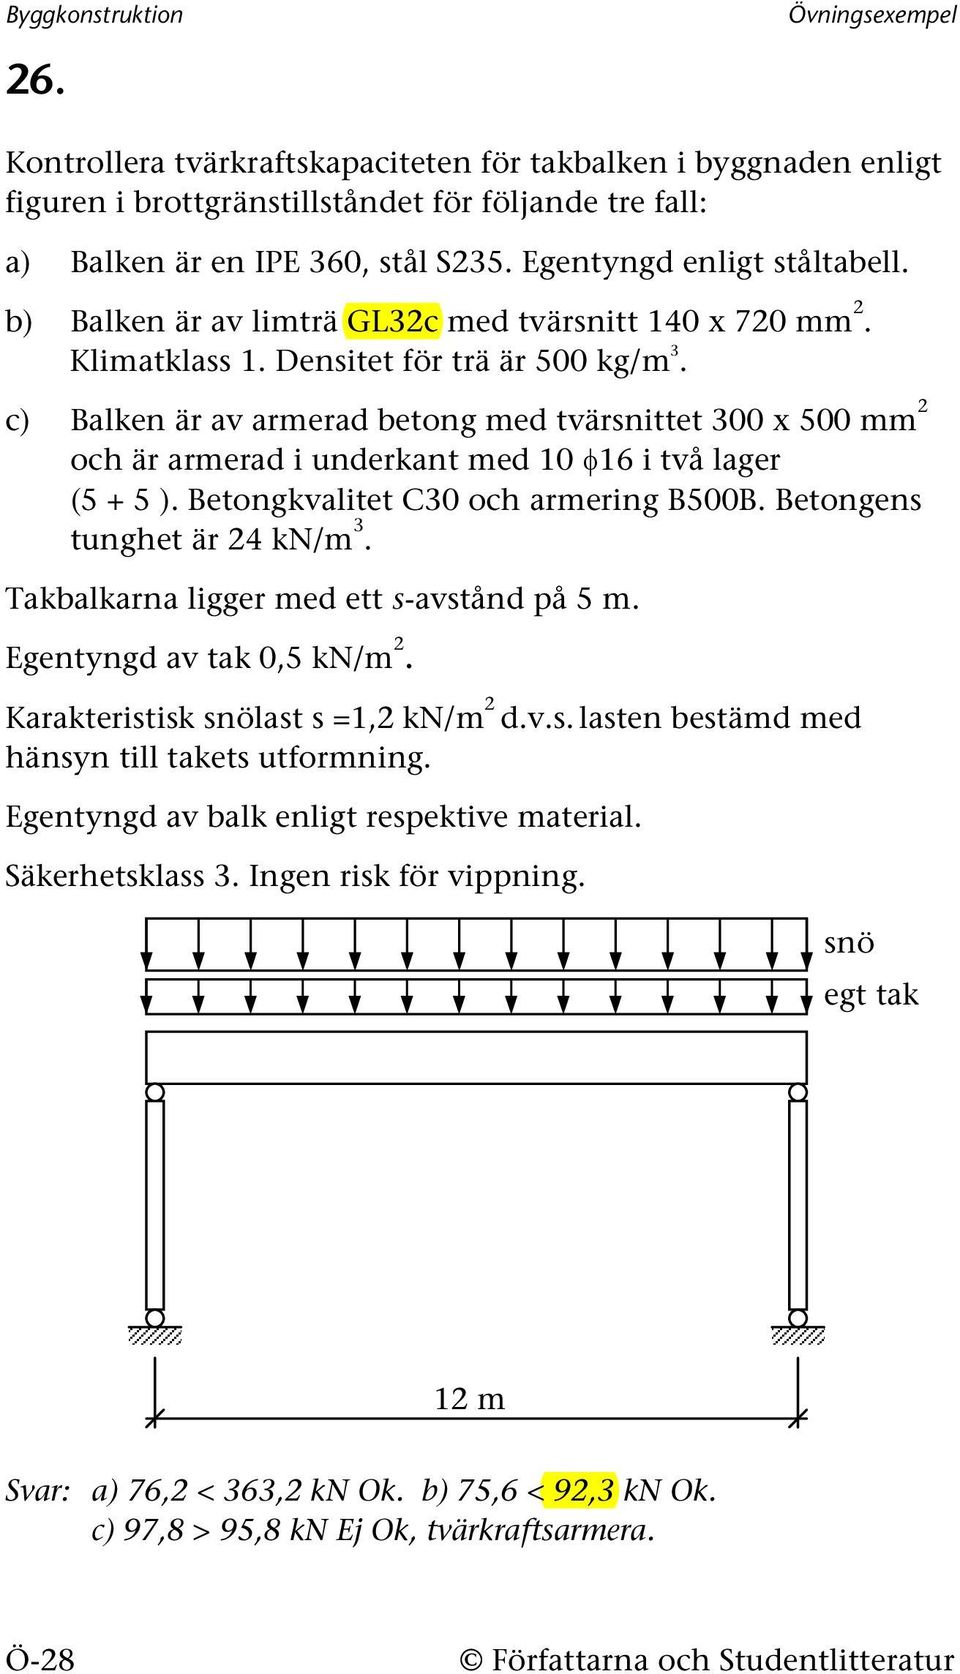 c) Balken är av armerad betong med tvärsnittet 300 x 500 mm och är armerad i underkant med 10 φ16 i två lager (5 + 5 ). Betongkvalitet C30 och armering B500B. Betongens tunghet är 4 kn/m 3.